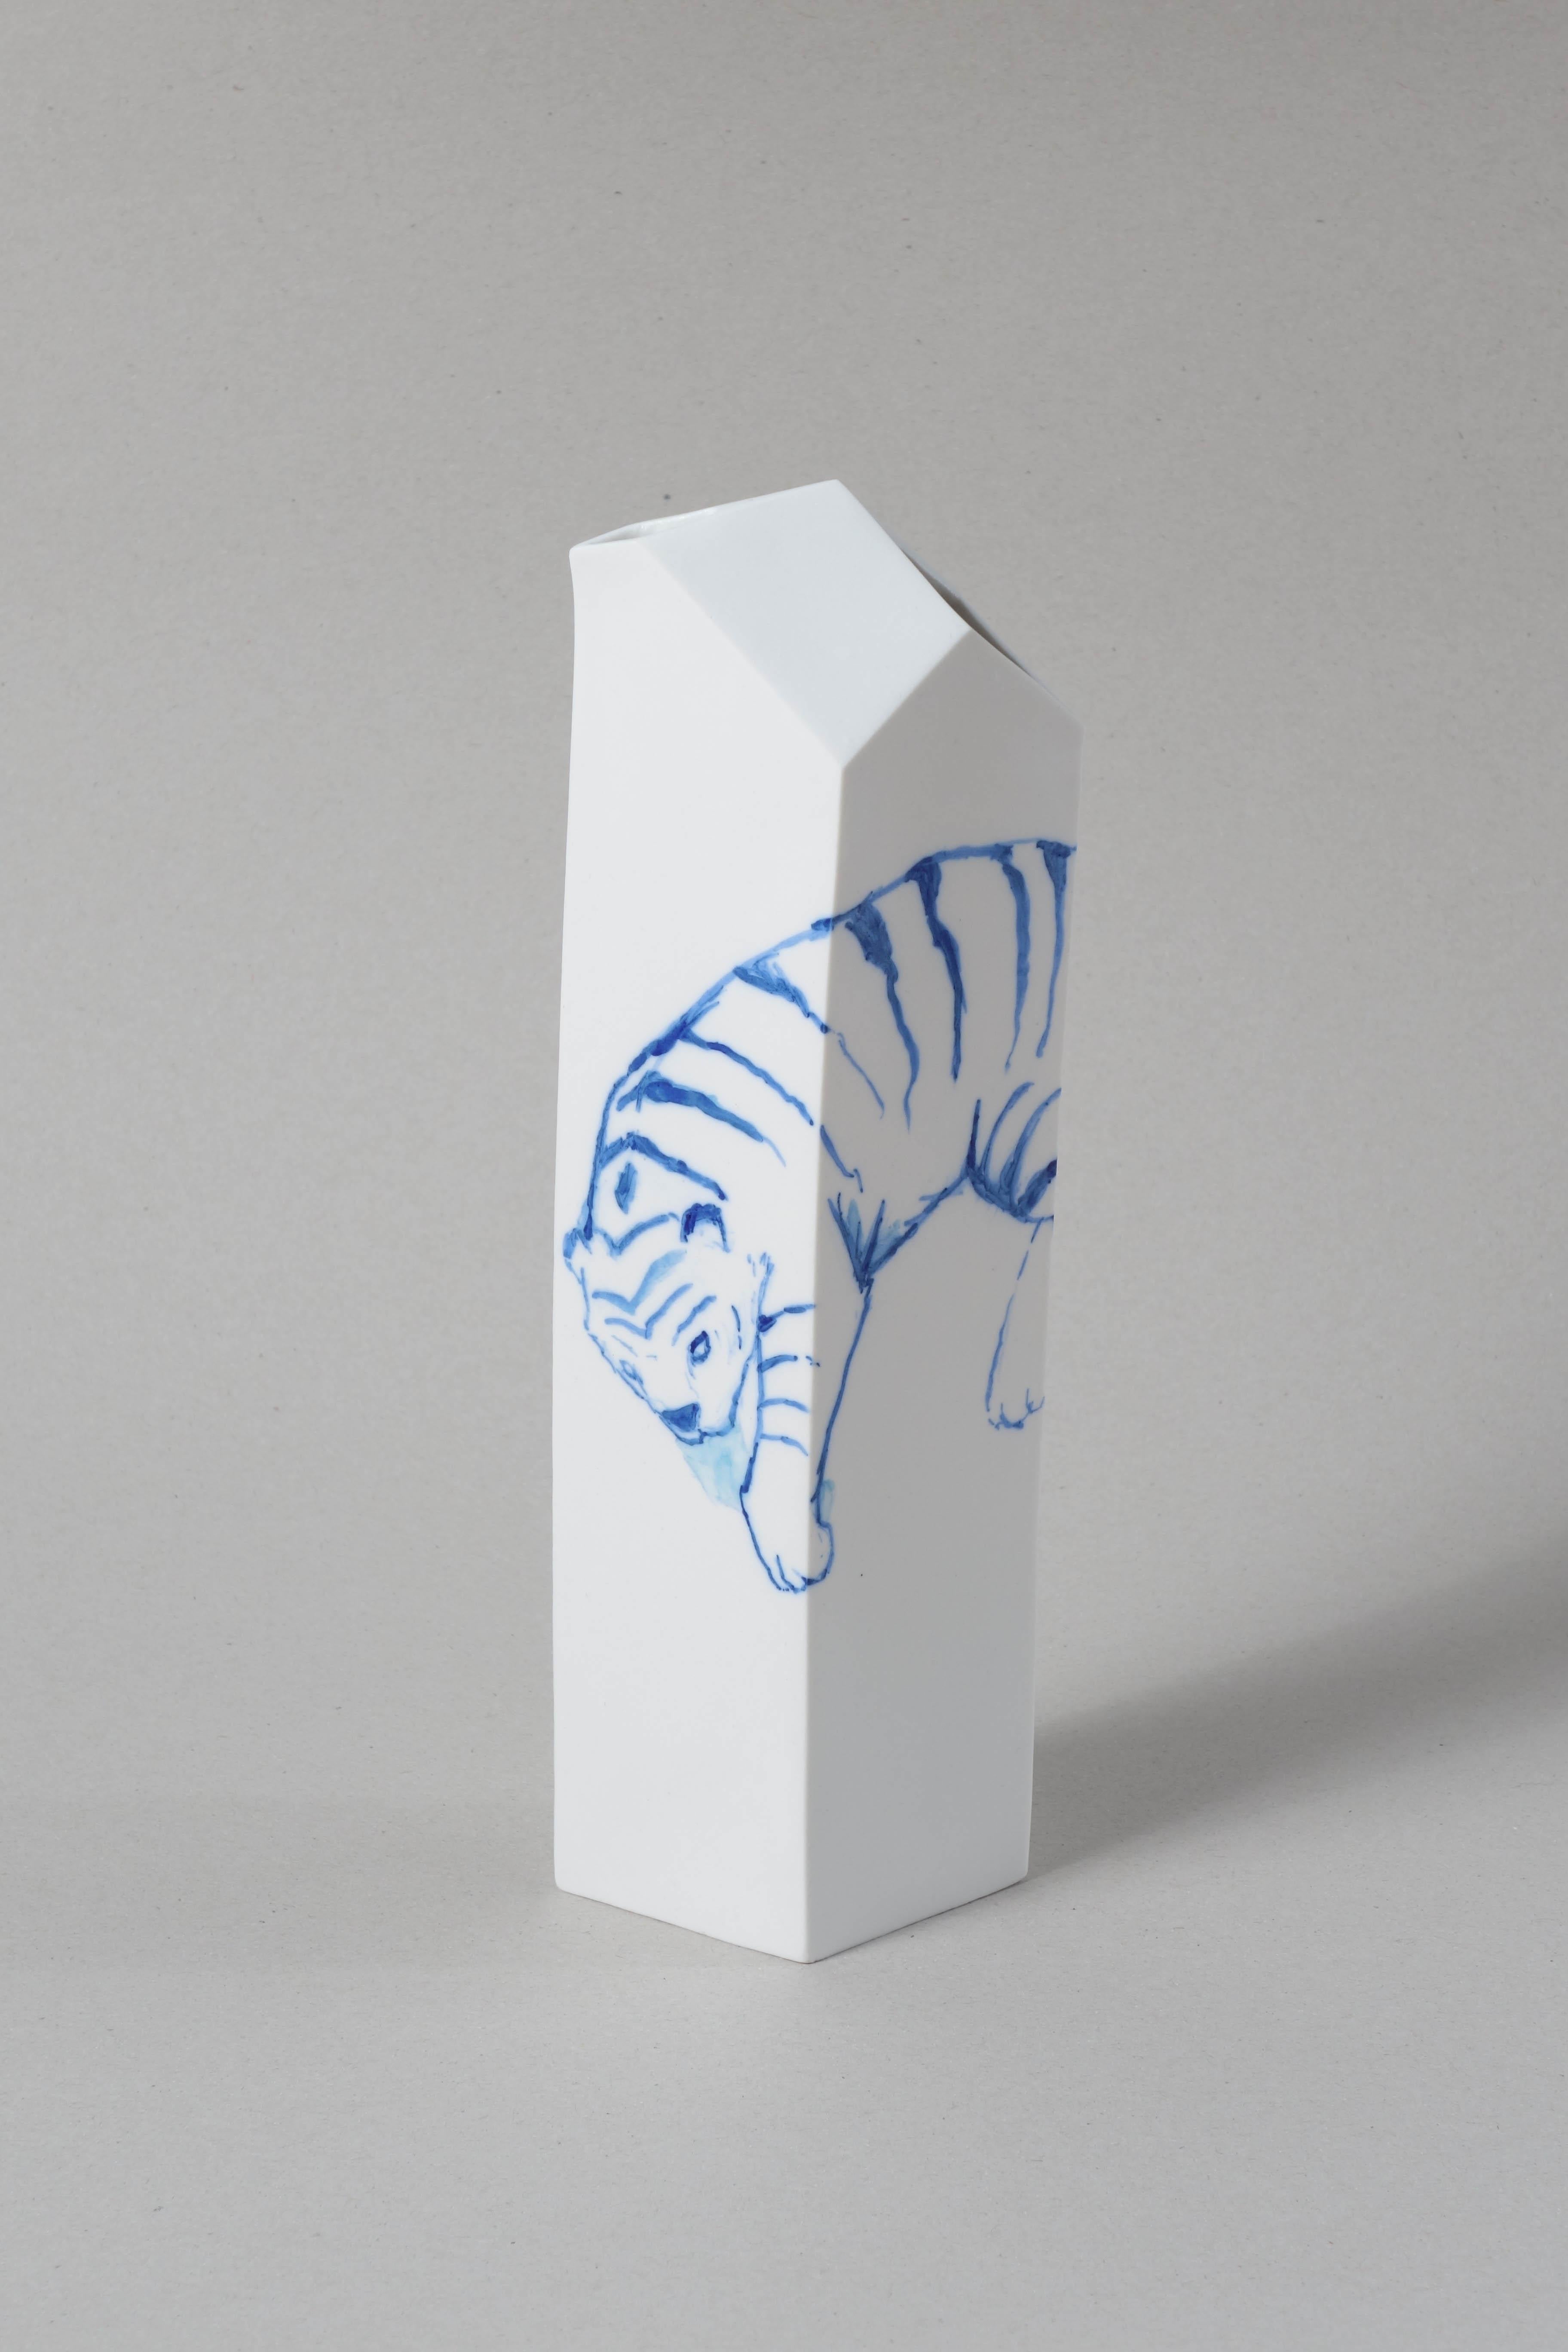 Savage de la Romba von La Cube
In Zusammenarbeit mit savage ceramics
Einzelstück, eine Einheit für jedes Tier
Madrid, 2016
MATERIALIEN: Porzellan
Abmessungen: 26 x 8,5 x 6,5 cm

Stefano Fusani, italienischer Künstler und Designer, und Clara